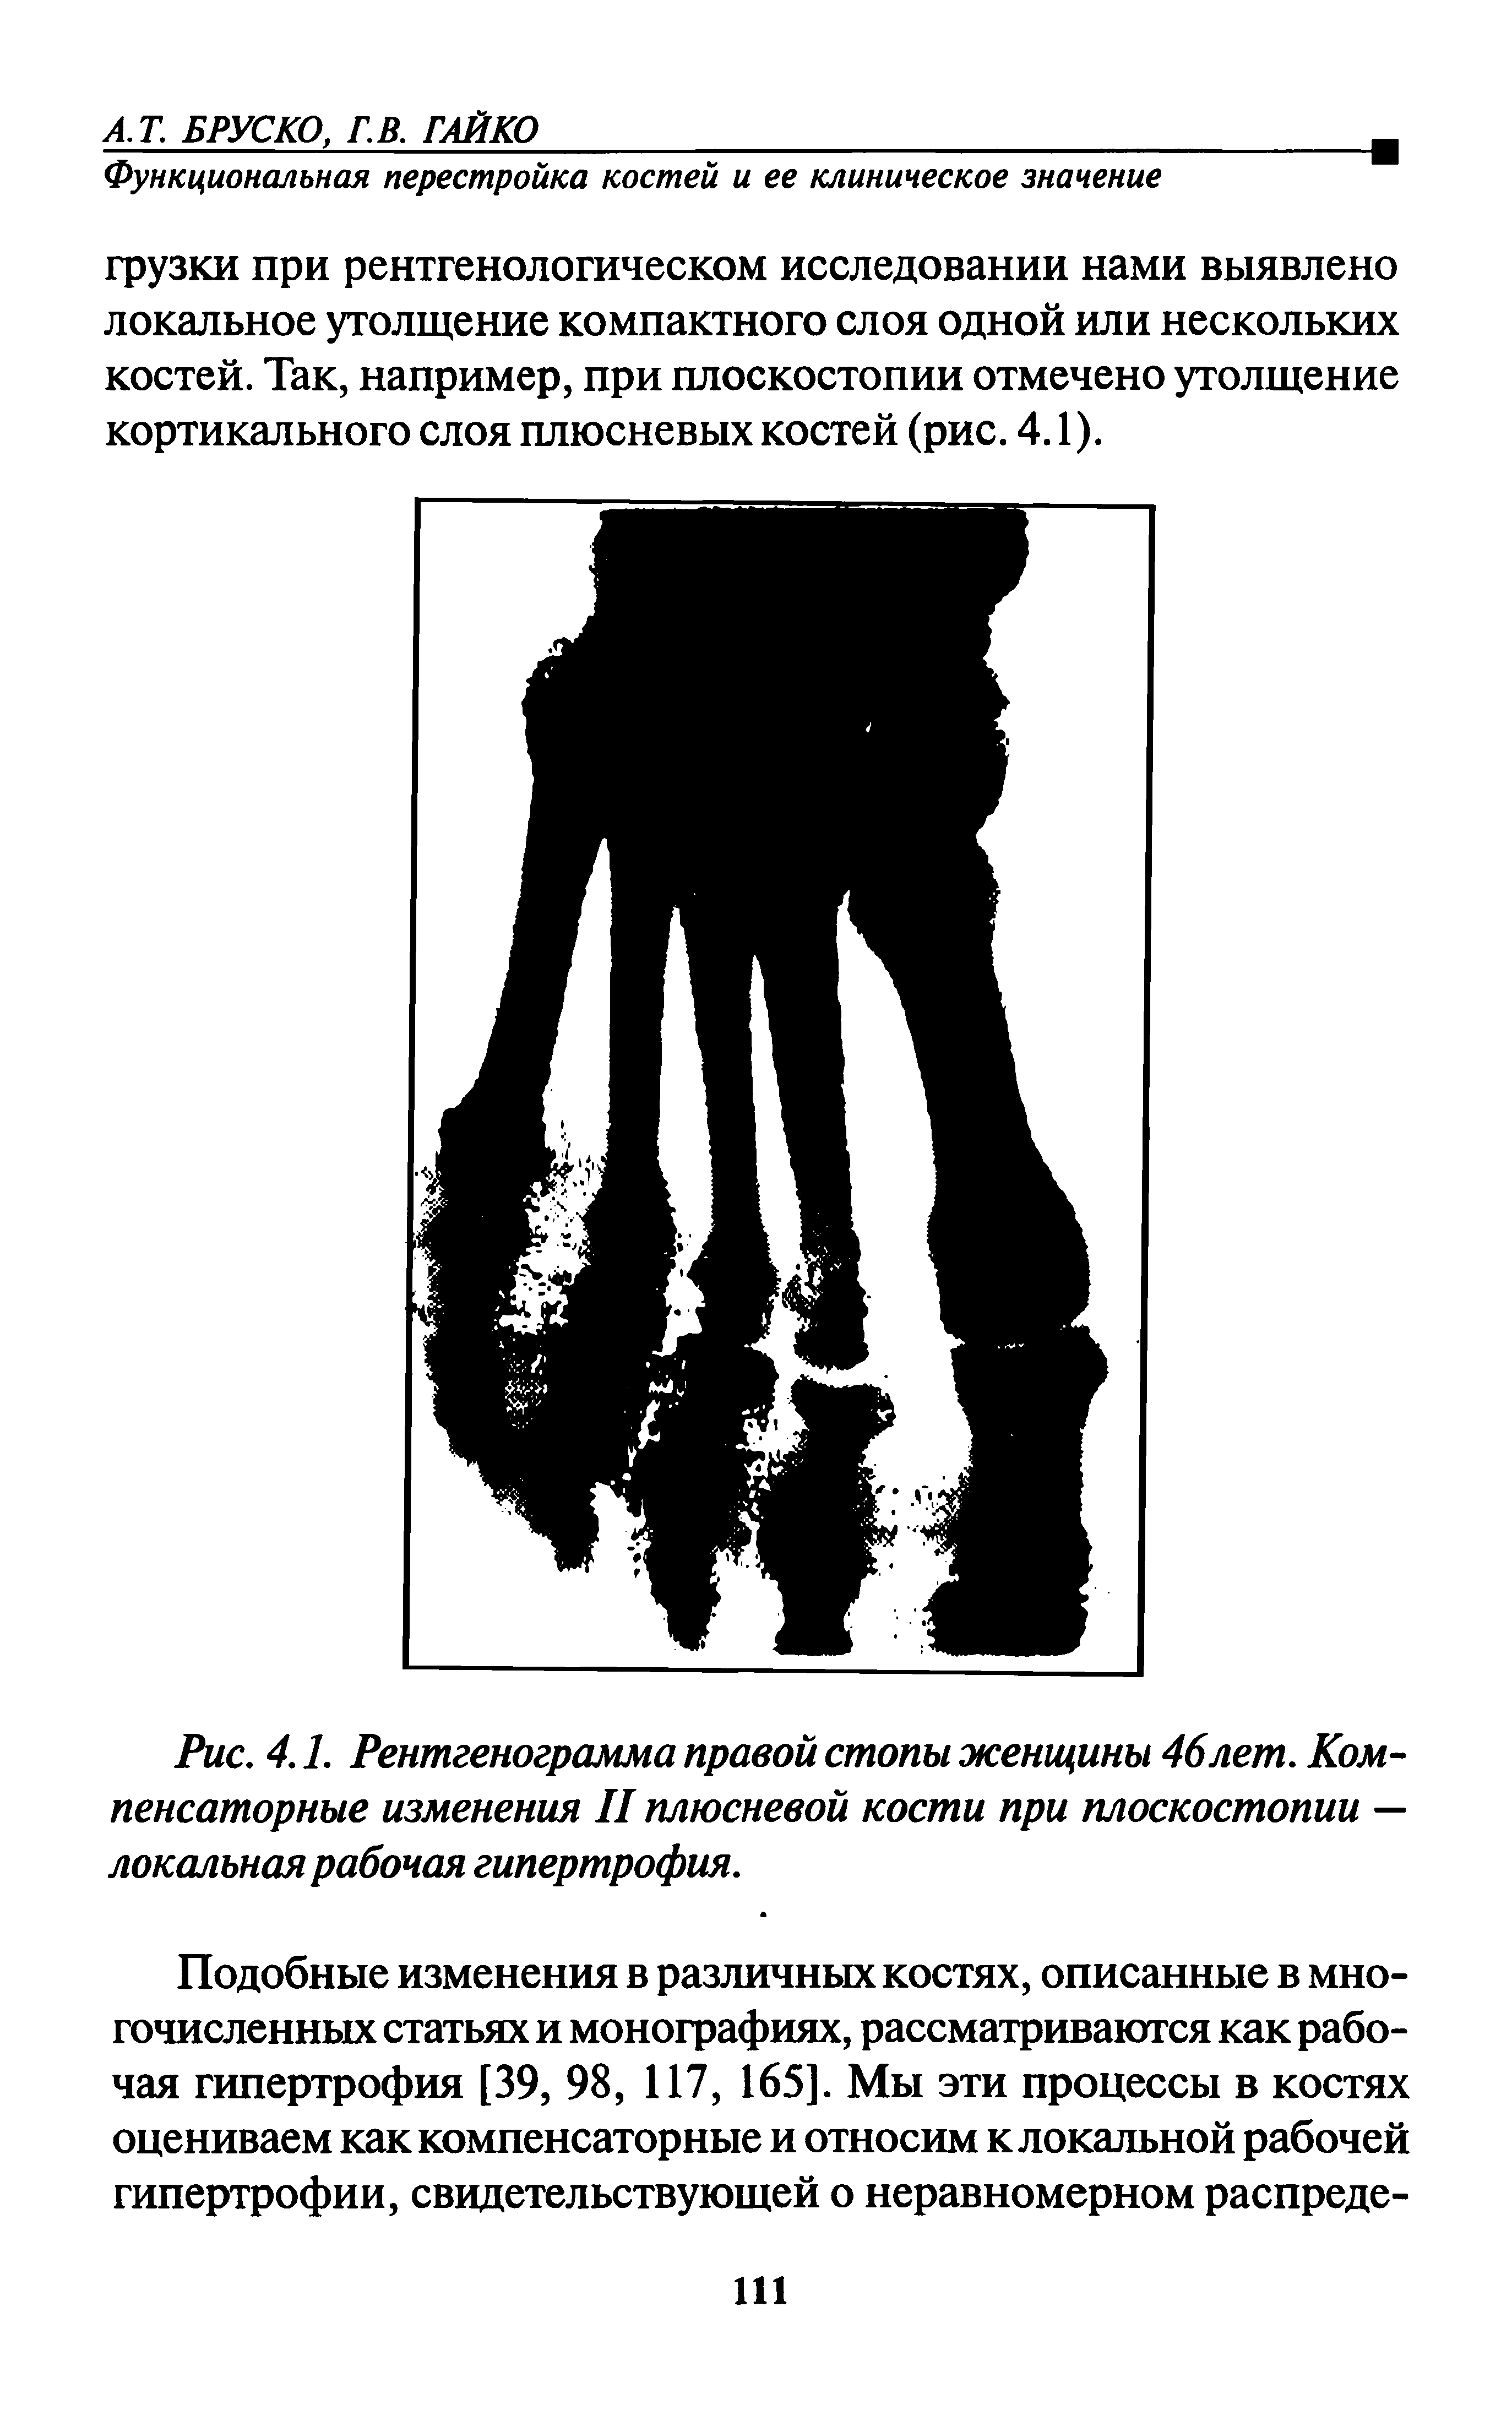 Рис. 4.1. Рентгенограмма правой стопы женщины 46лет. Компенсаторные изменения II плюсневой кости при плоскостопии — локальная рабочая гипертрофия.